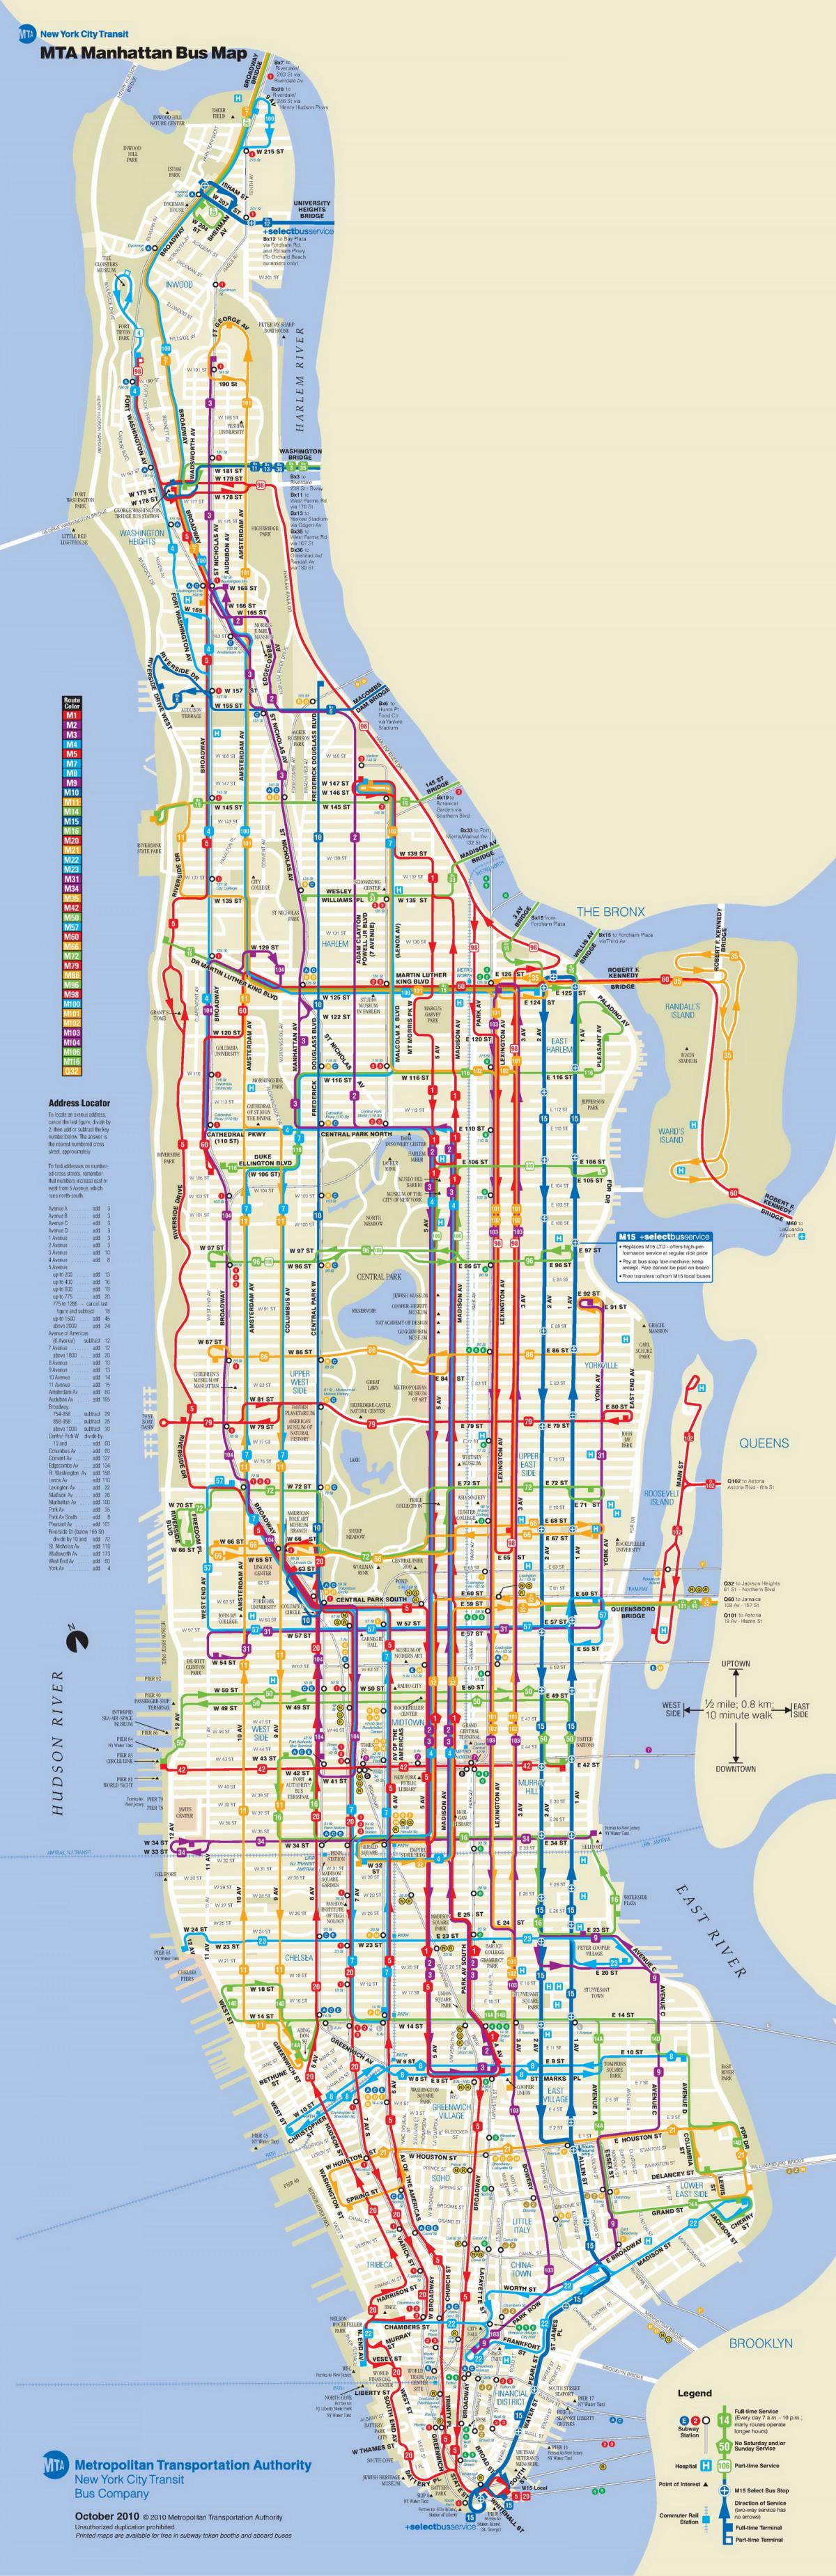 Manhattan bussi kartta pysähtyy